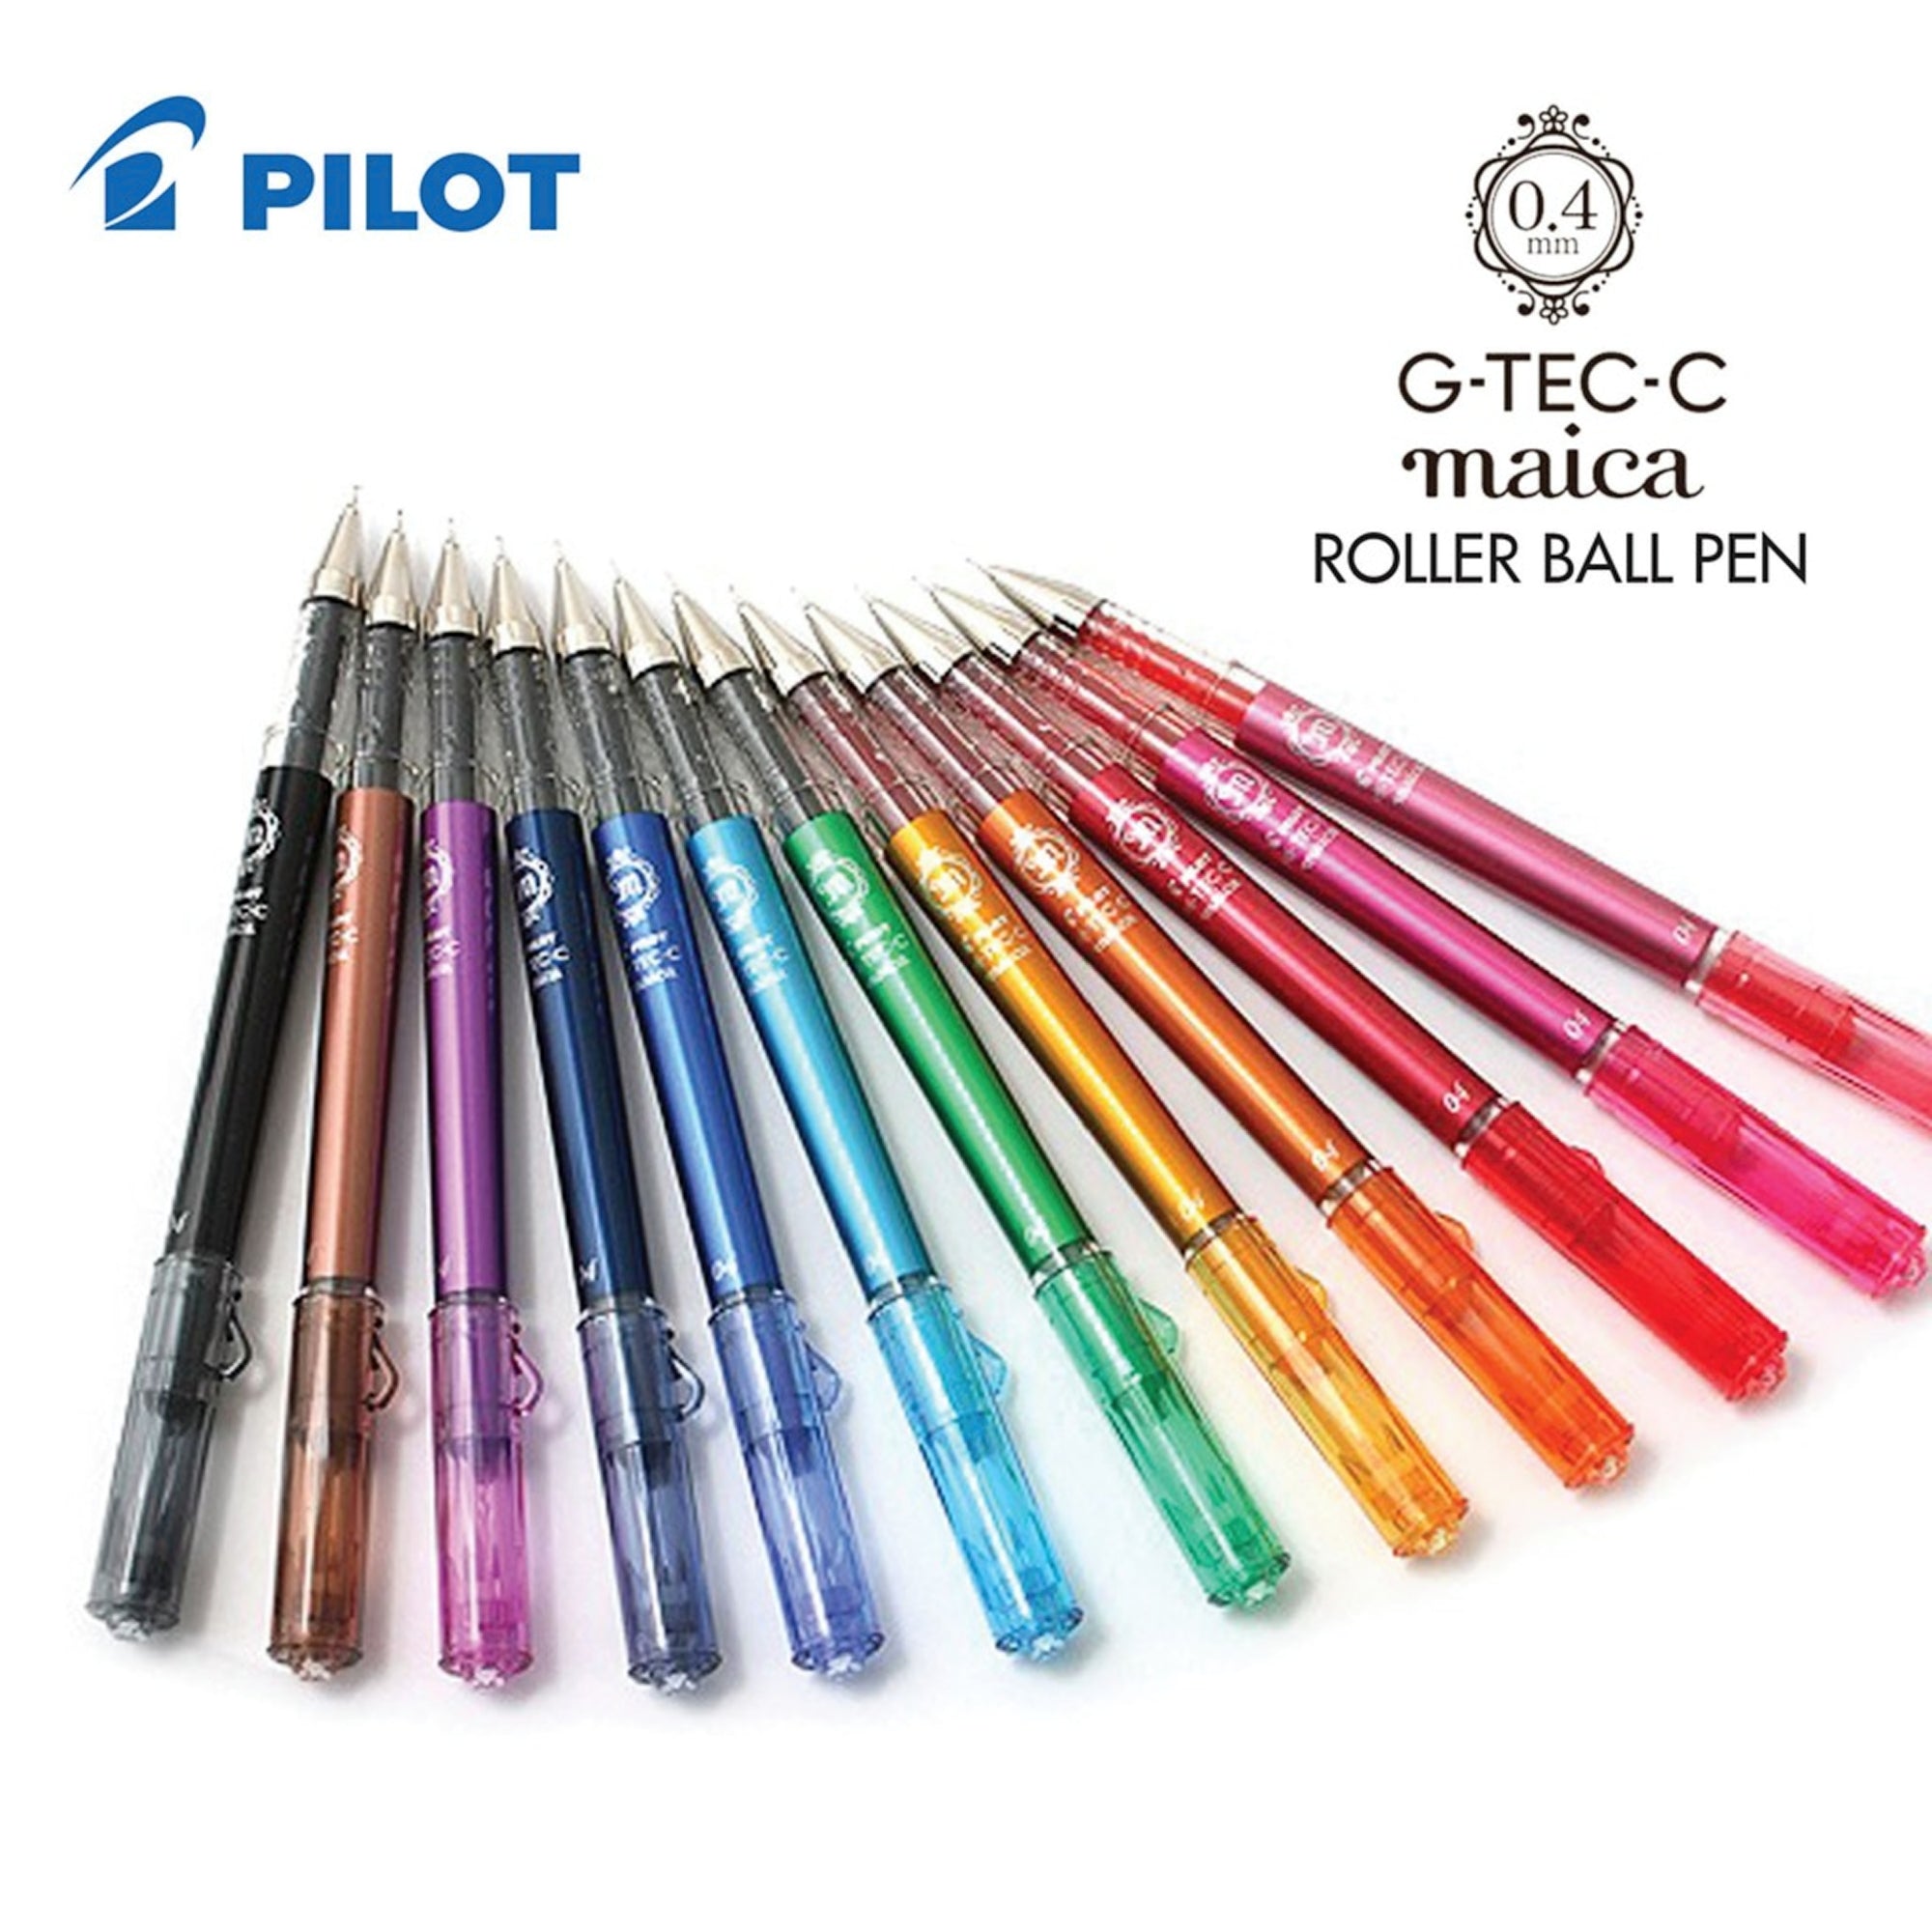 Pilot Hi-Tec-C Maica Gel Pen Various Colors